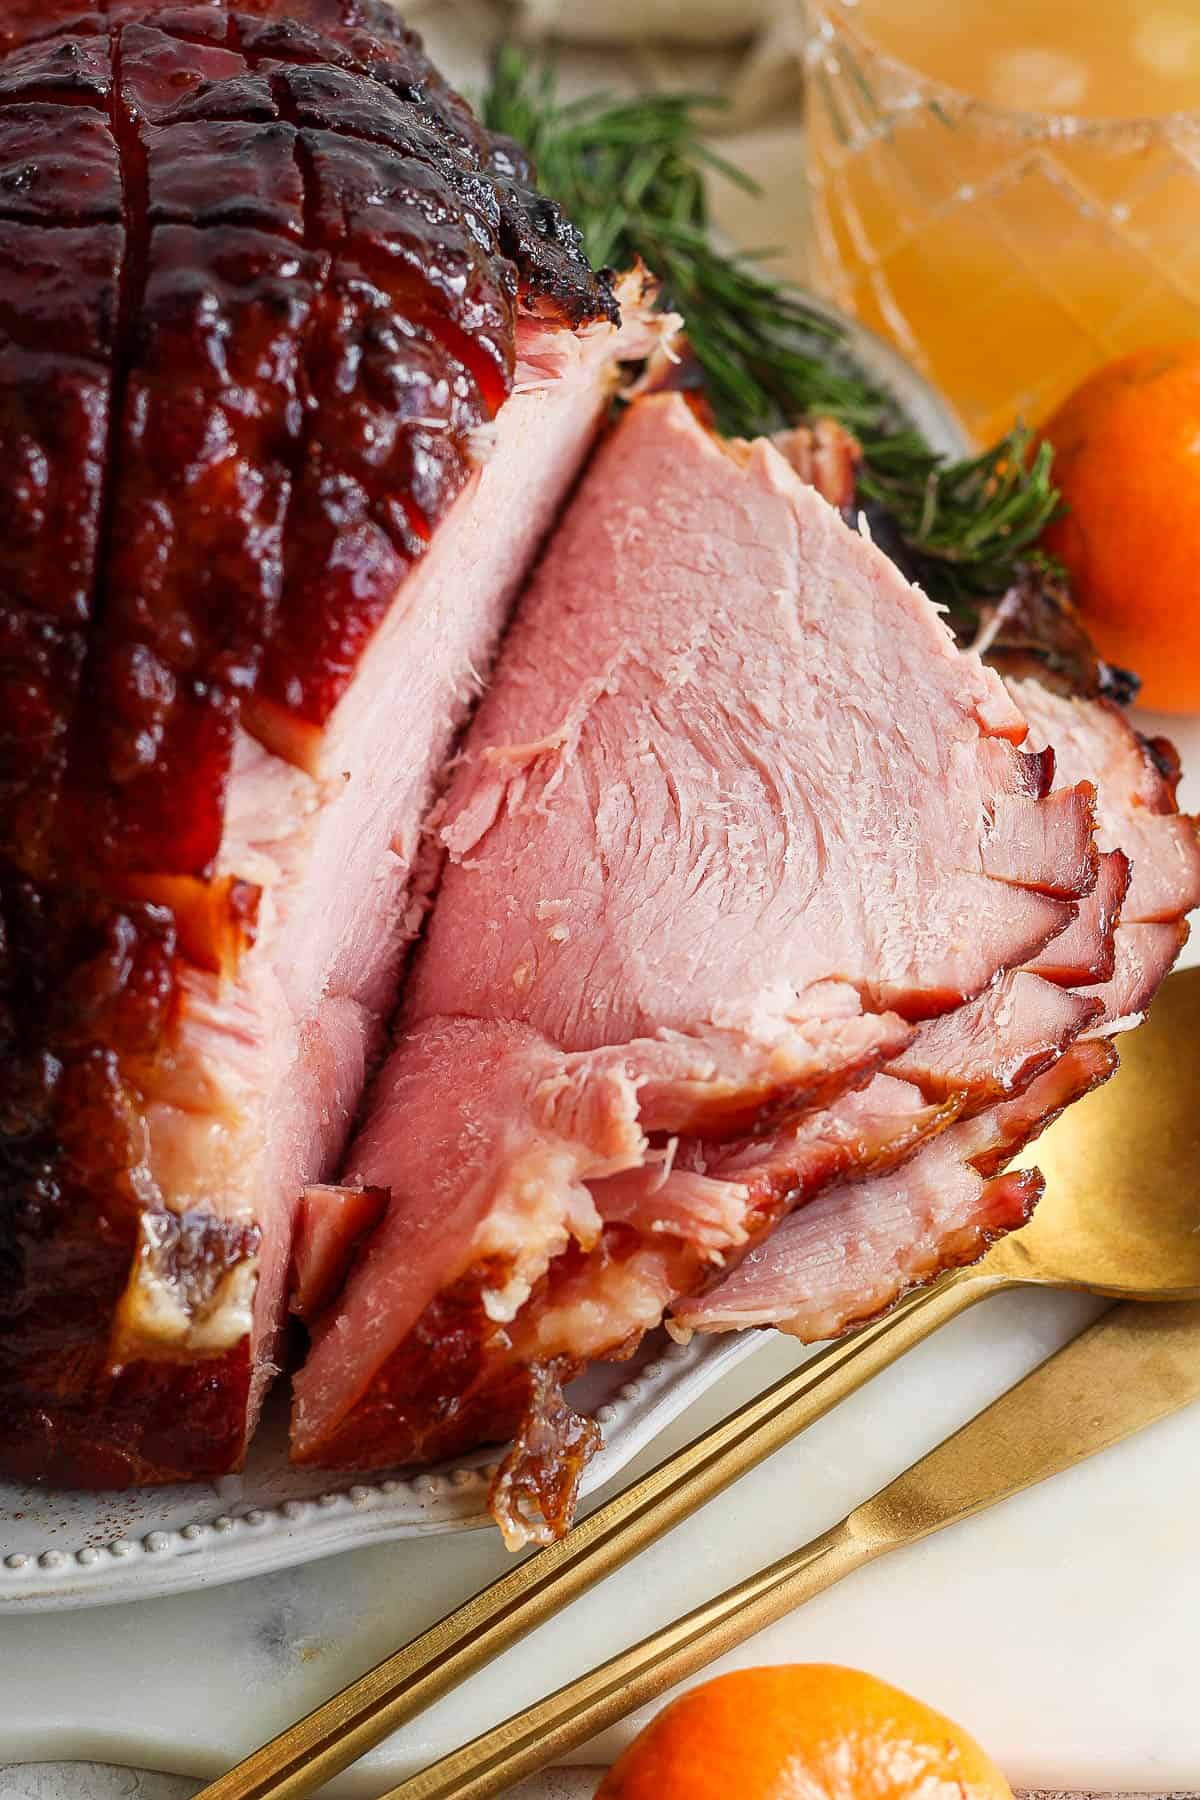 A grilled ham sliced on a platter.